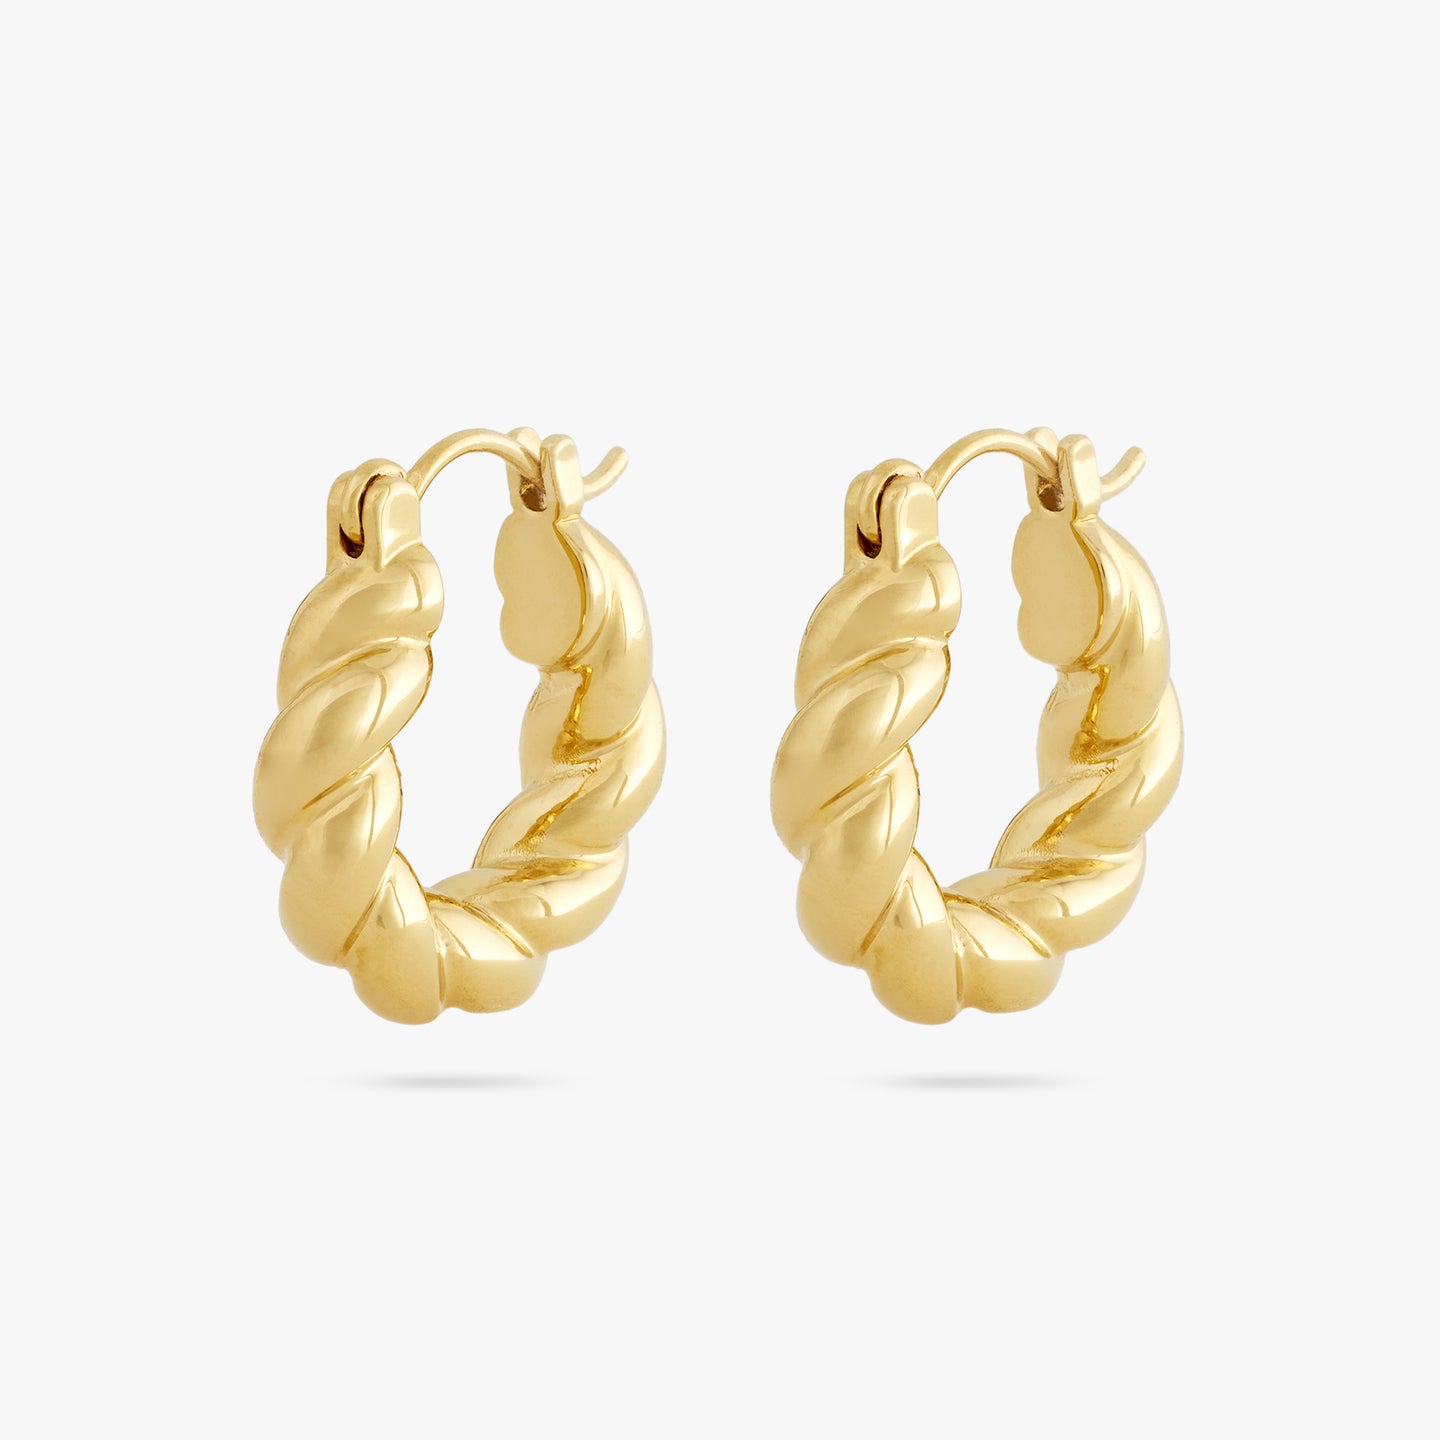 Small Gold Hoop Earrings Gold Huggie Earrings Small Hoop Earrings Silver Small  Hoop Earrings Rose Gold Hoops Earrings Bridesmaid Gift - Etsy | Small gold  hoop earrings, Hoop earrings small, Huggies earrings